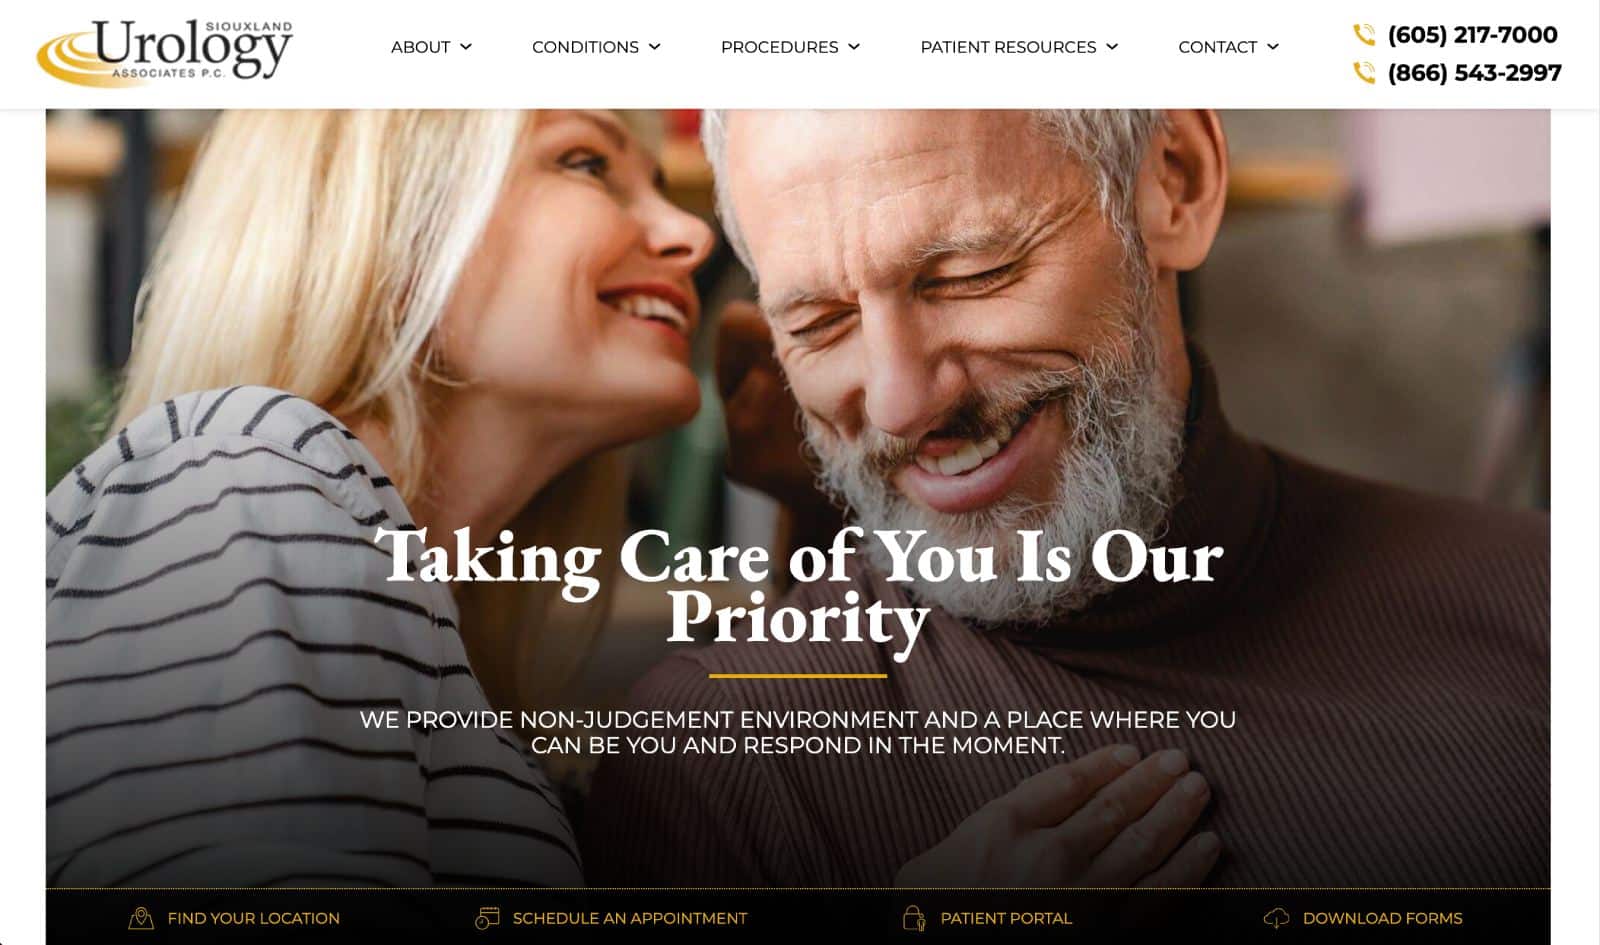 Siouxland Urology's website - Urologist website design